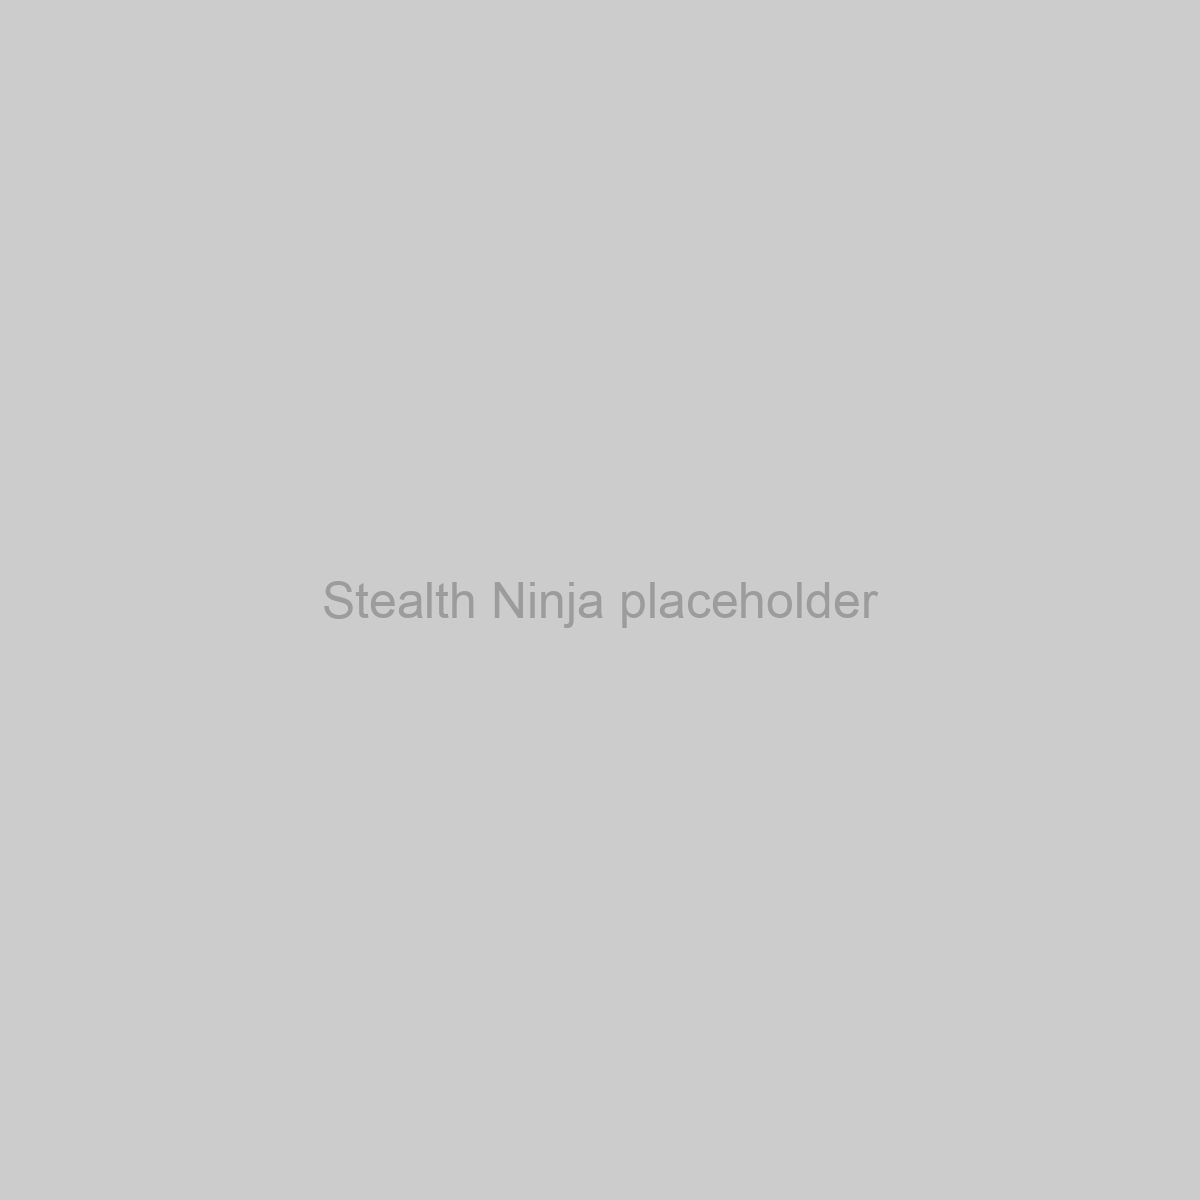 Stealth Ninja Placeholder Image